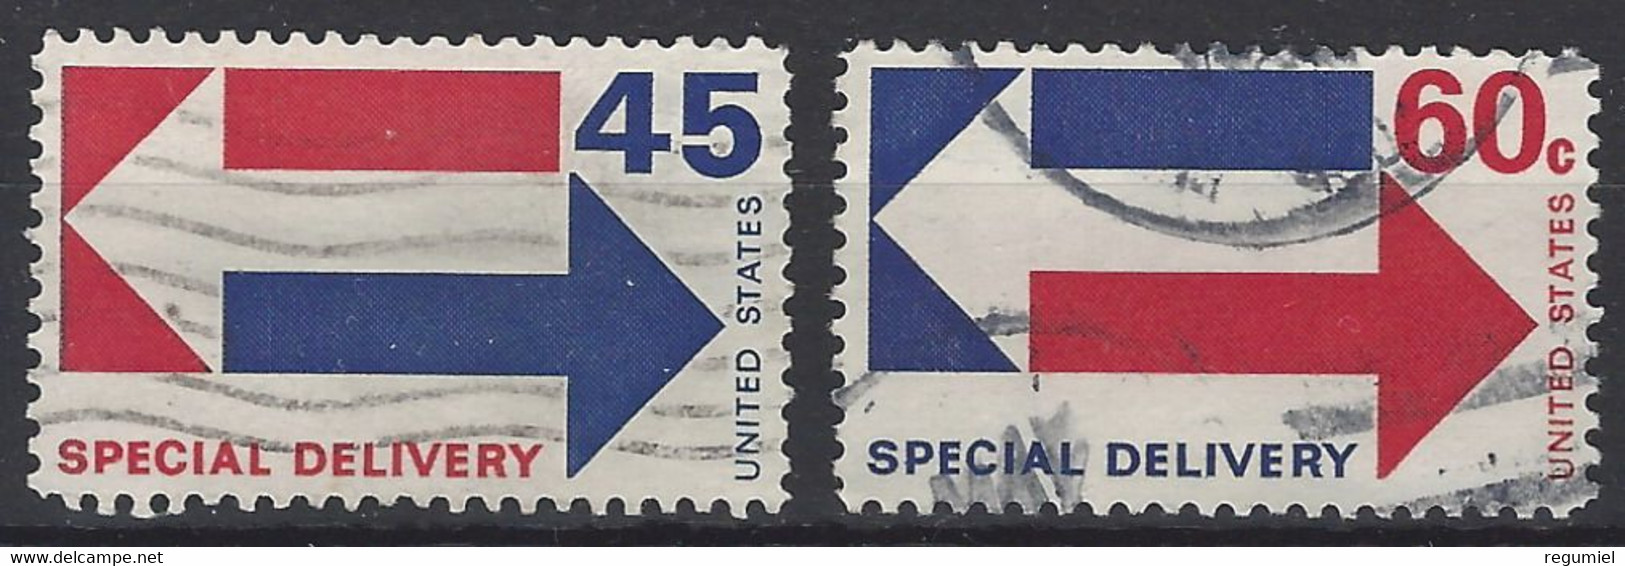 Estados Unidos Expres U 18/19 (o)  Usado. 1969 - Special Delivery, Registration & Certified